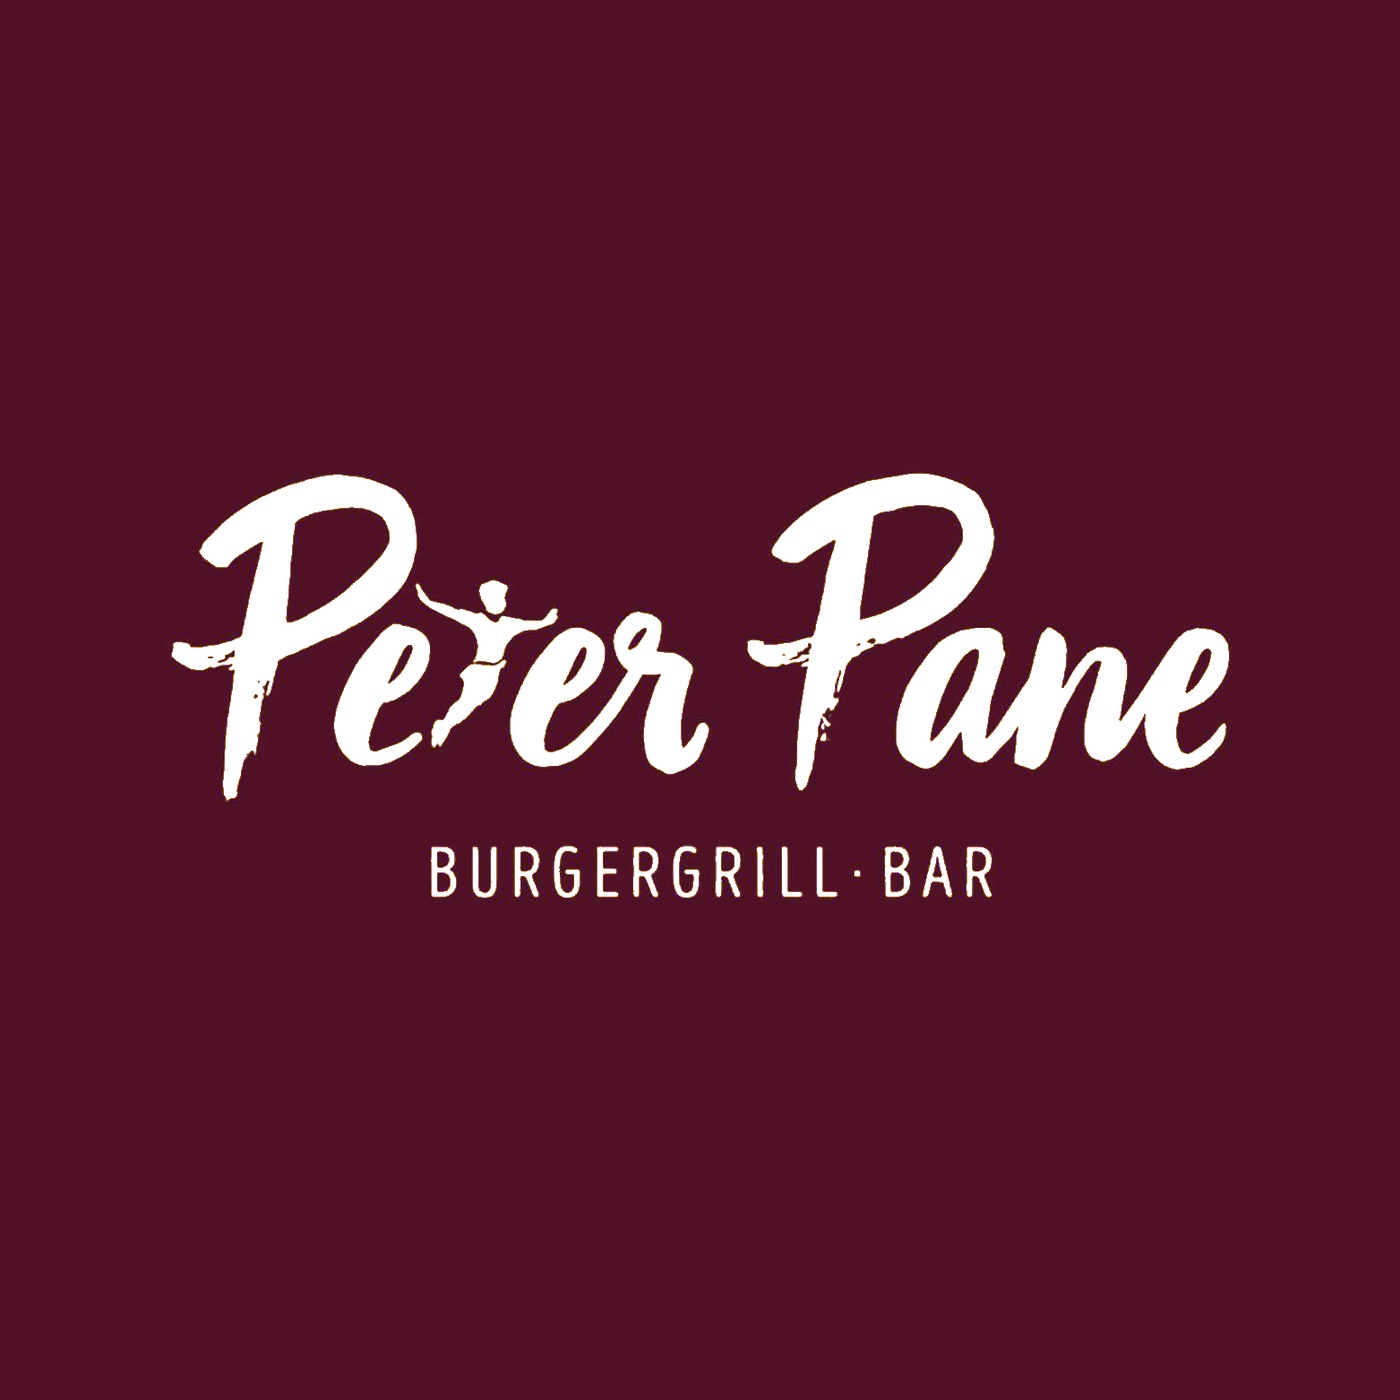 PAN | Peter Pane